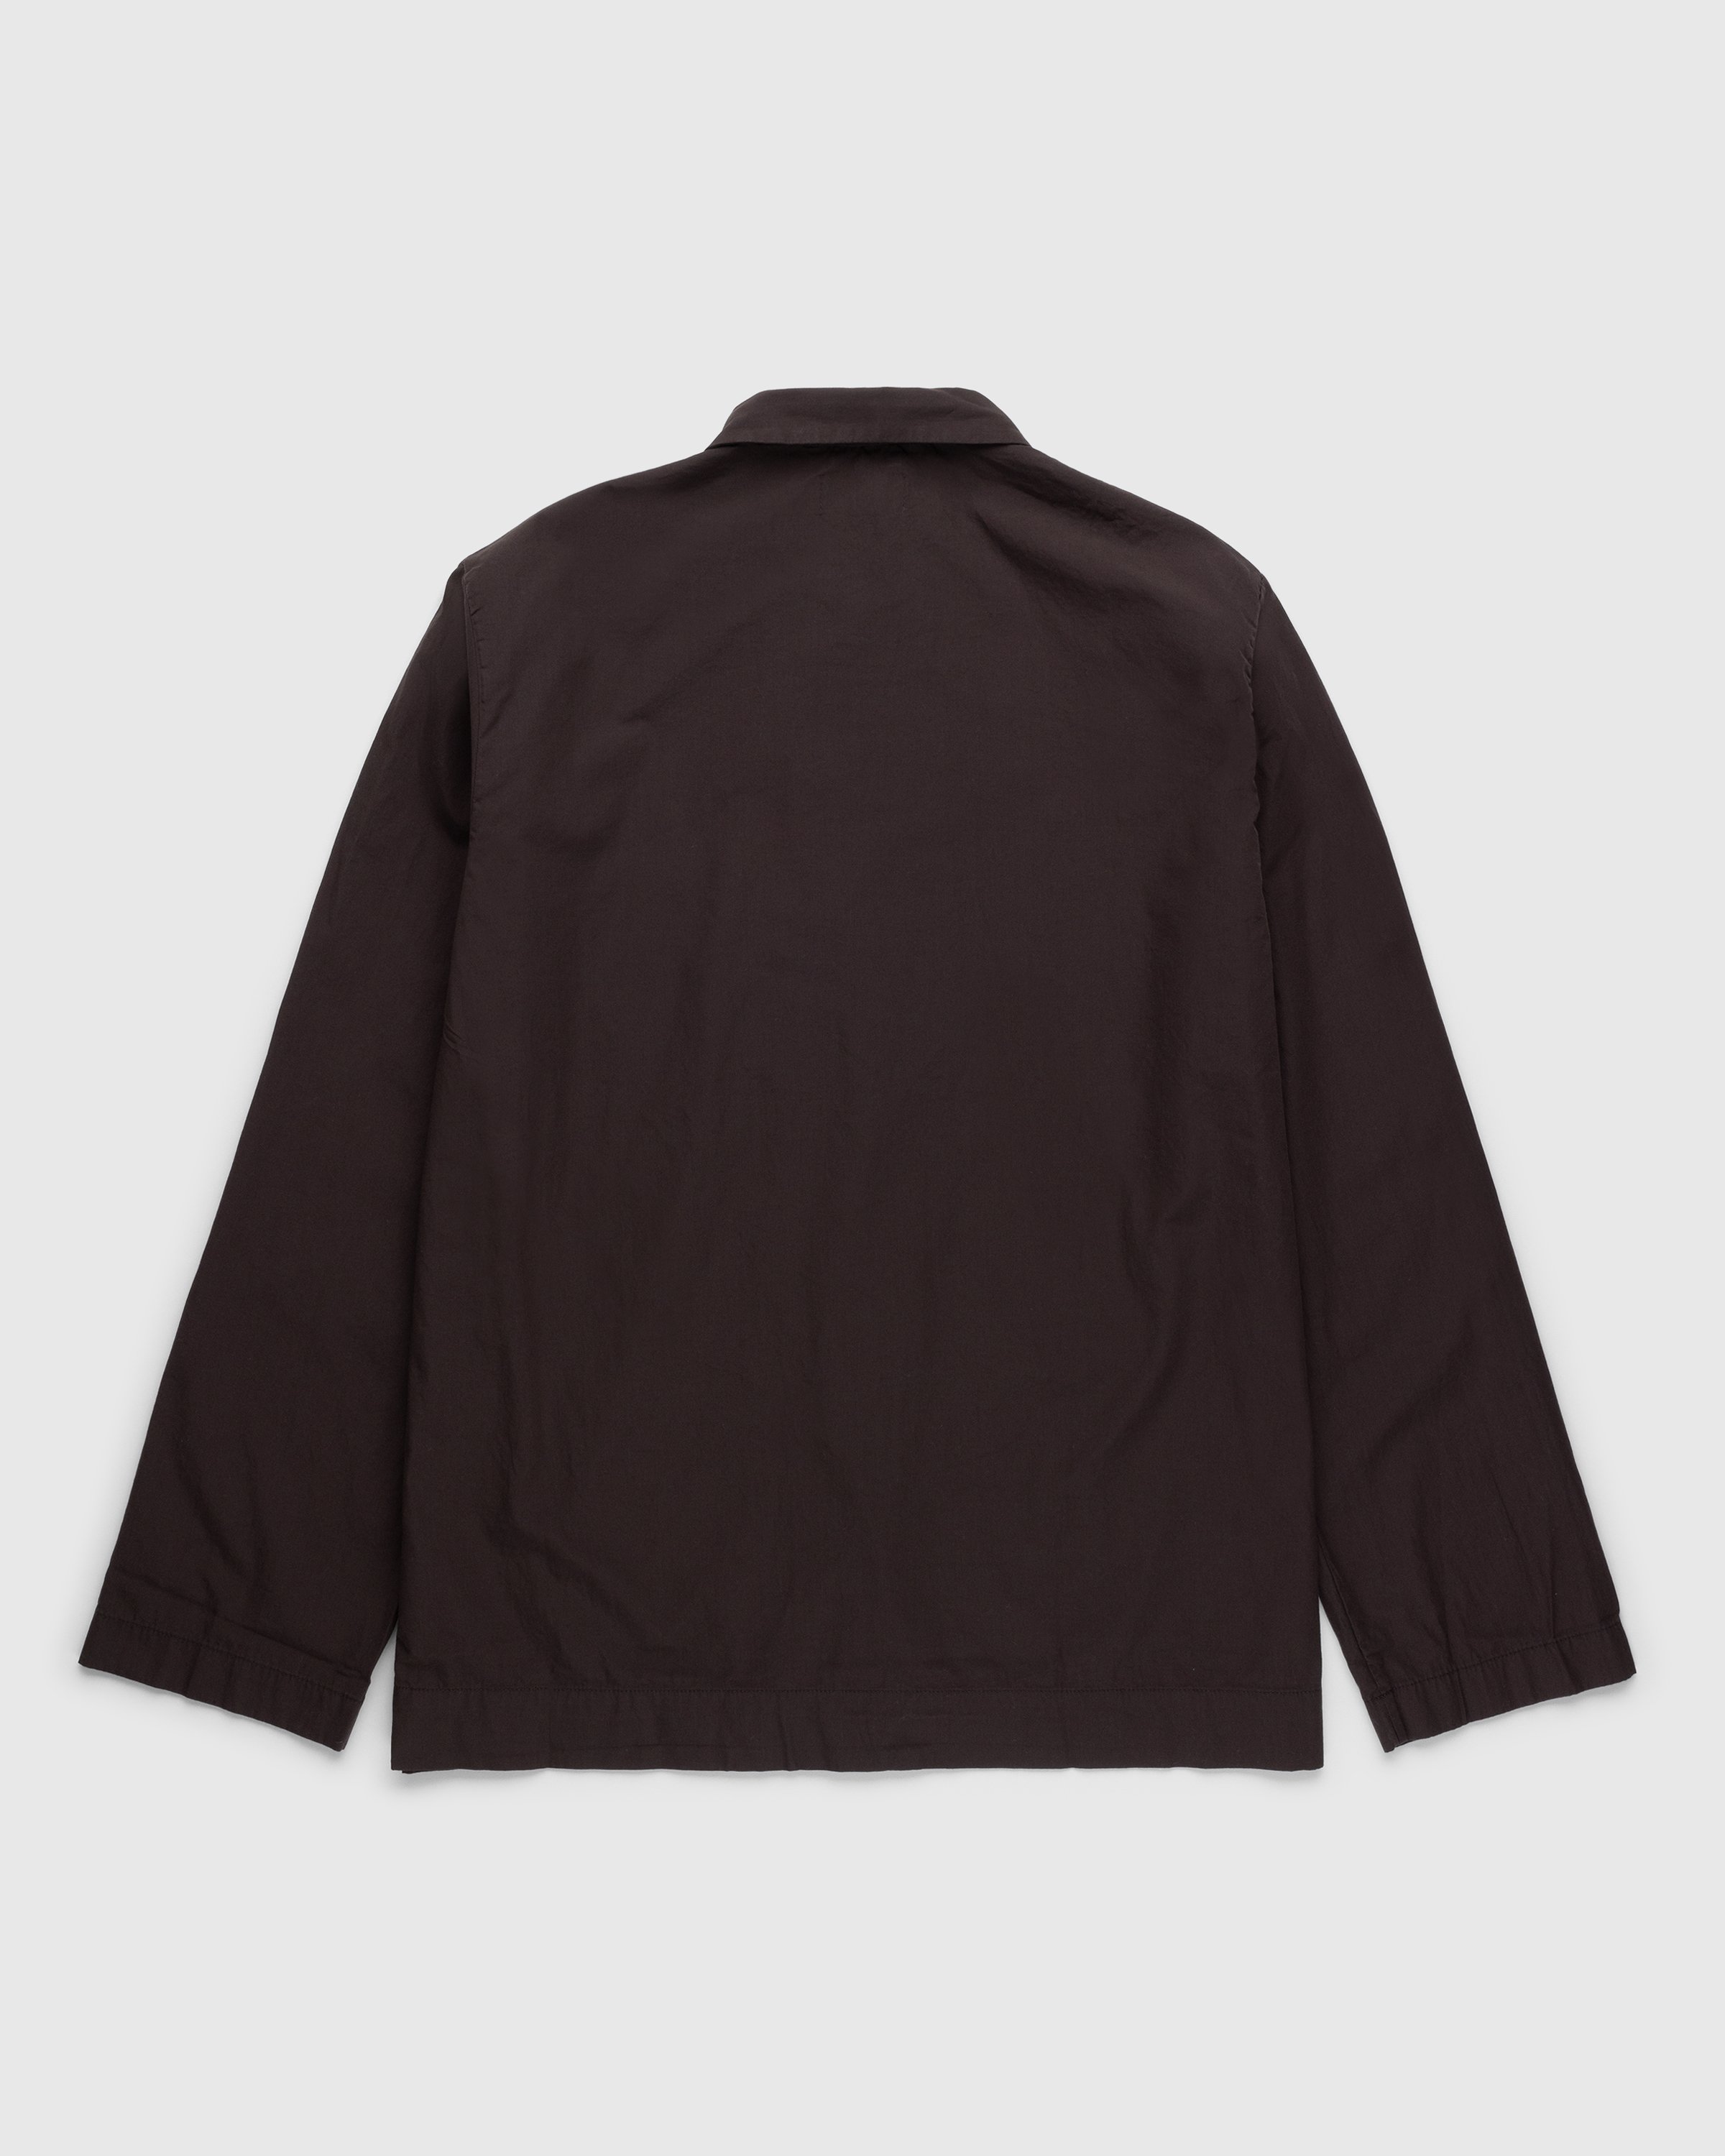 Tekla - Cotton Poplin Pyjamas Shirt Coffee - Clothing - Brown - Image 2